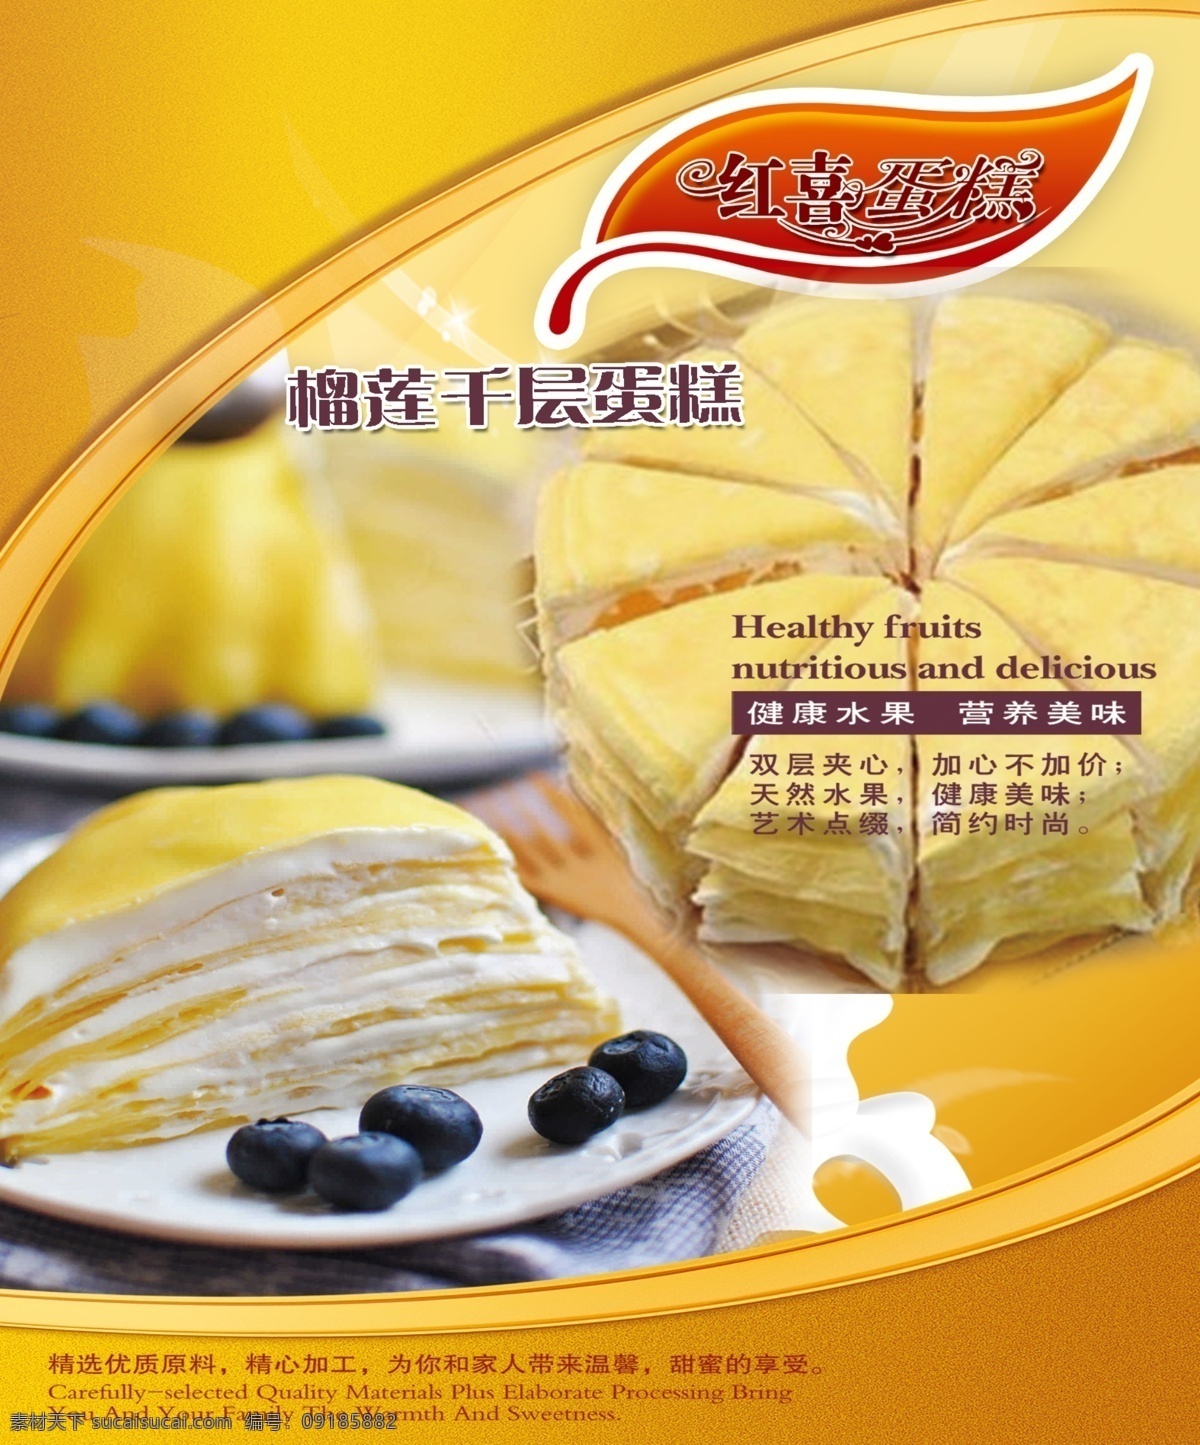 榴莲蛋糕 榴莲 千层蛋糕 海报 宣传设计 面包 西点 黄色